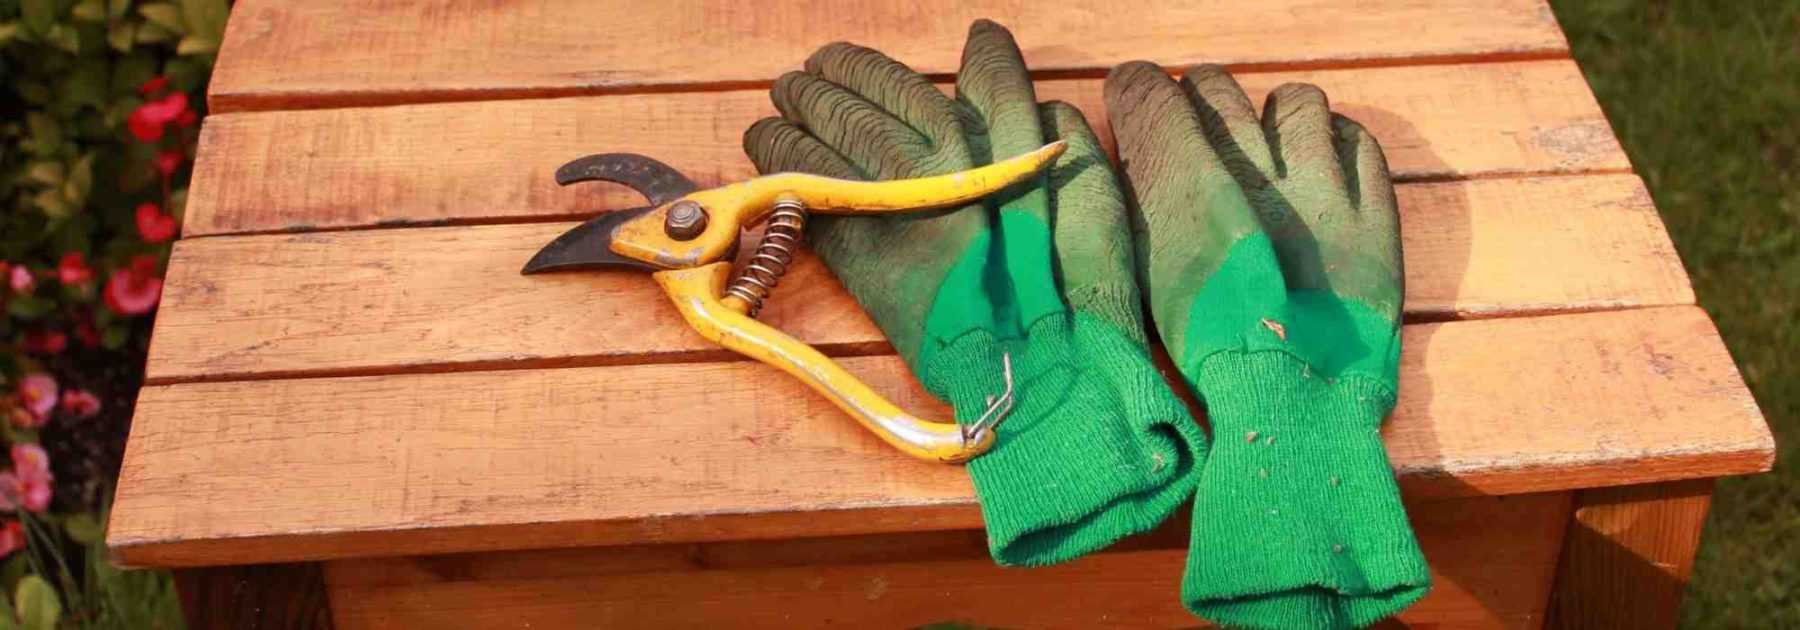 Comment choisir ses gants de jardinage ?